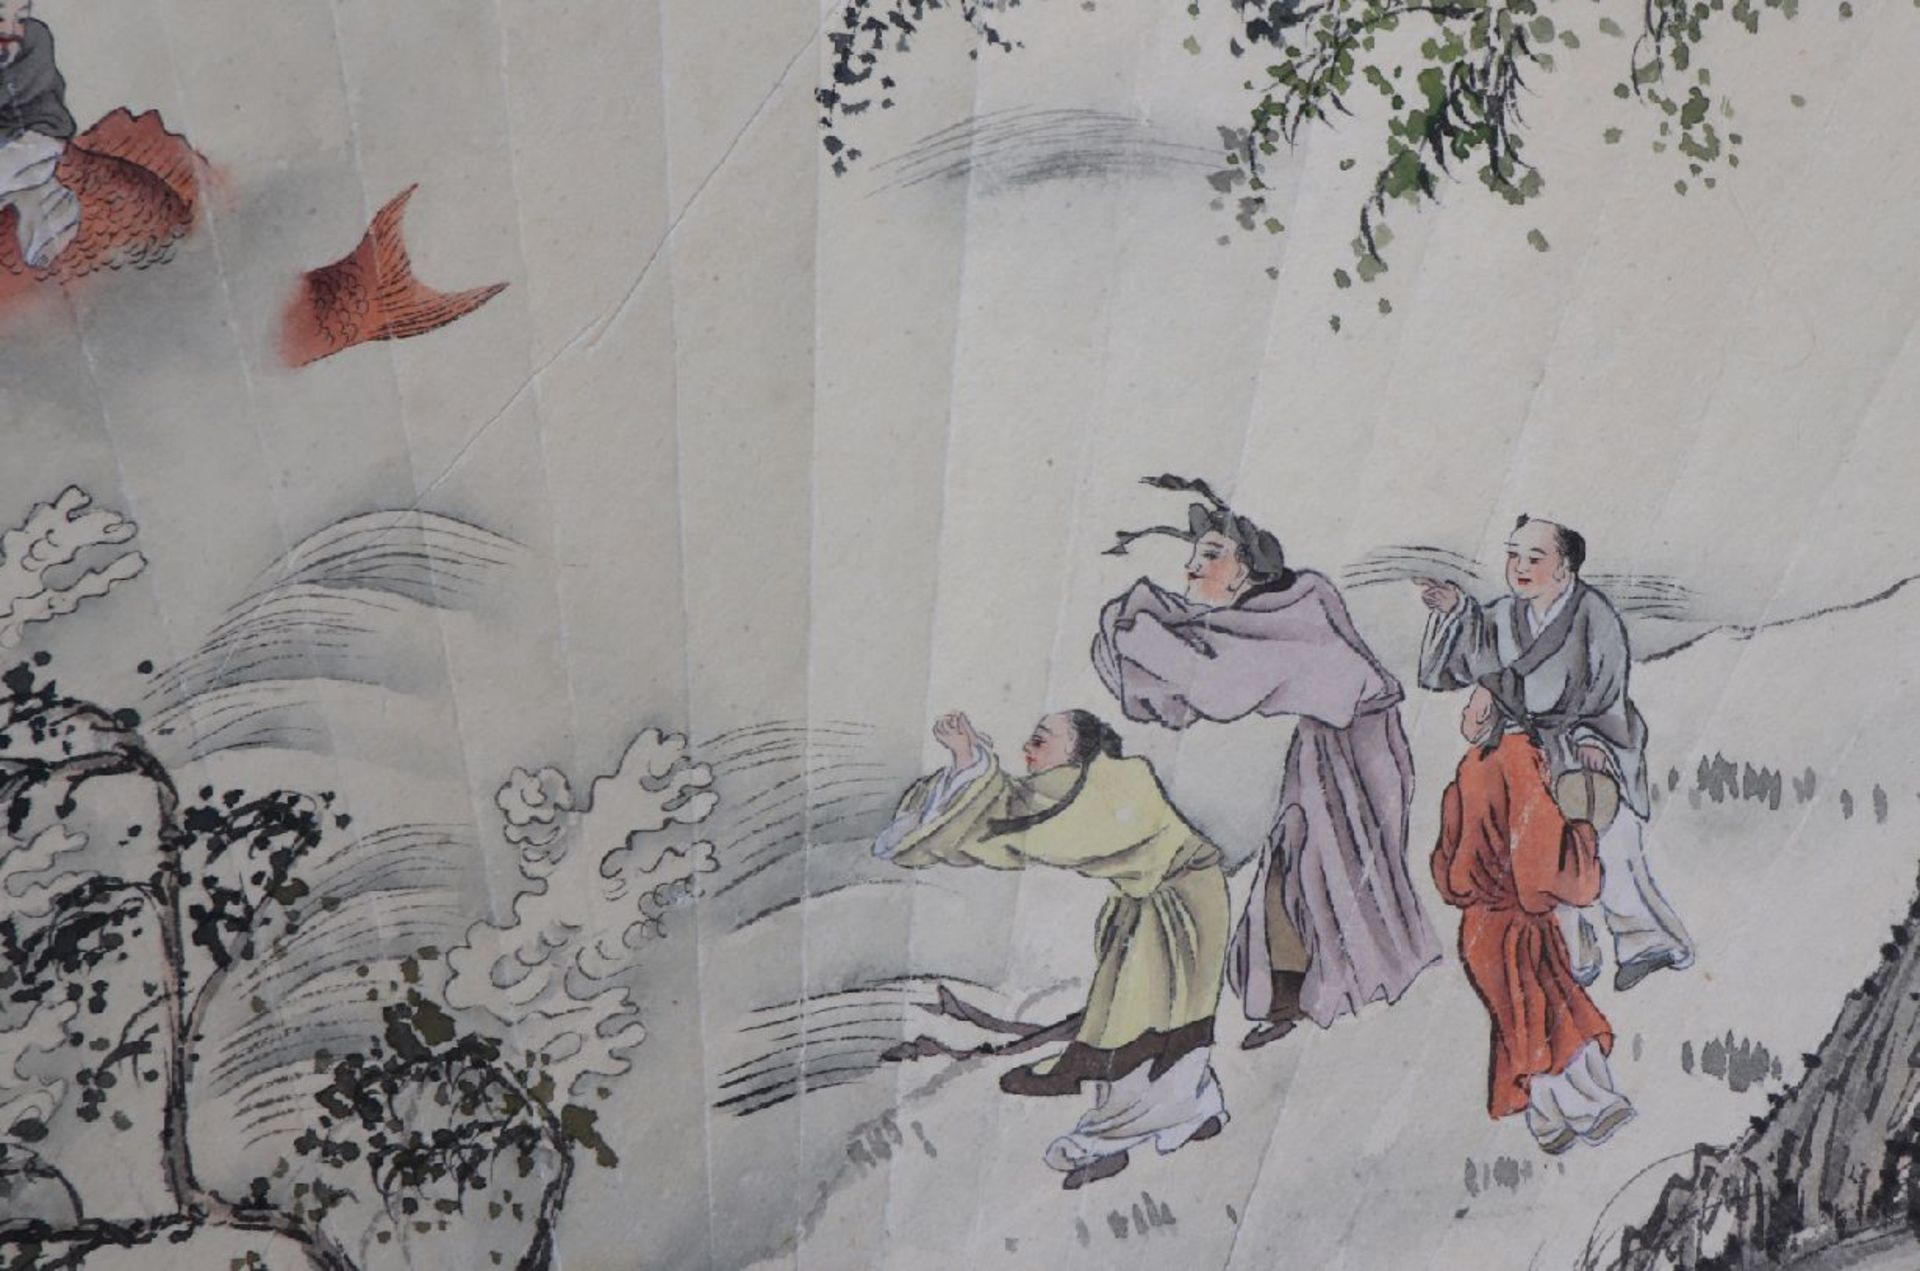 2 chinesische FächerentwürfeTusche auf Papier, 1x mythologische Szene ¨Asiate auf Fisch reitend¨, - Bild 2 aus 6